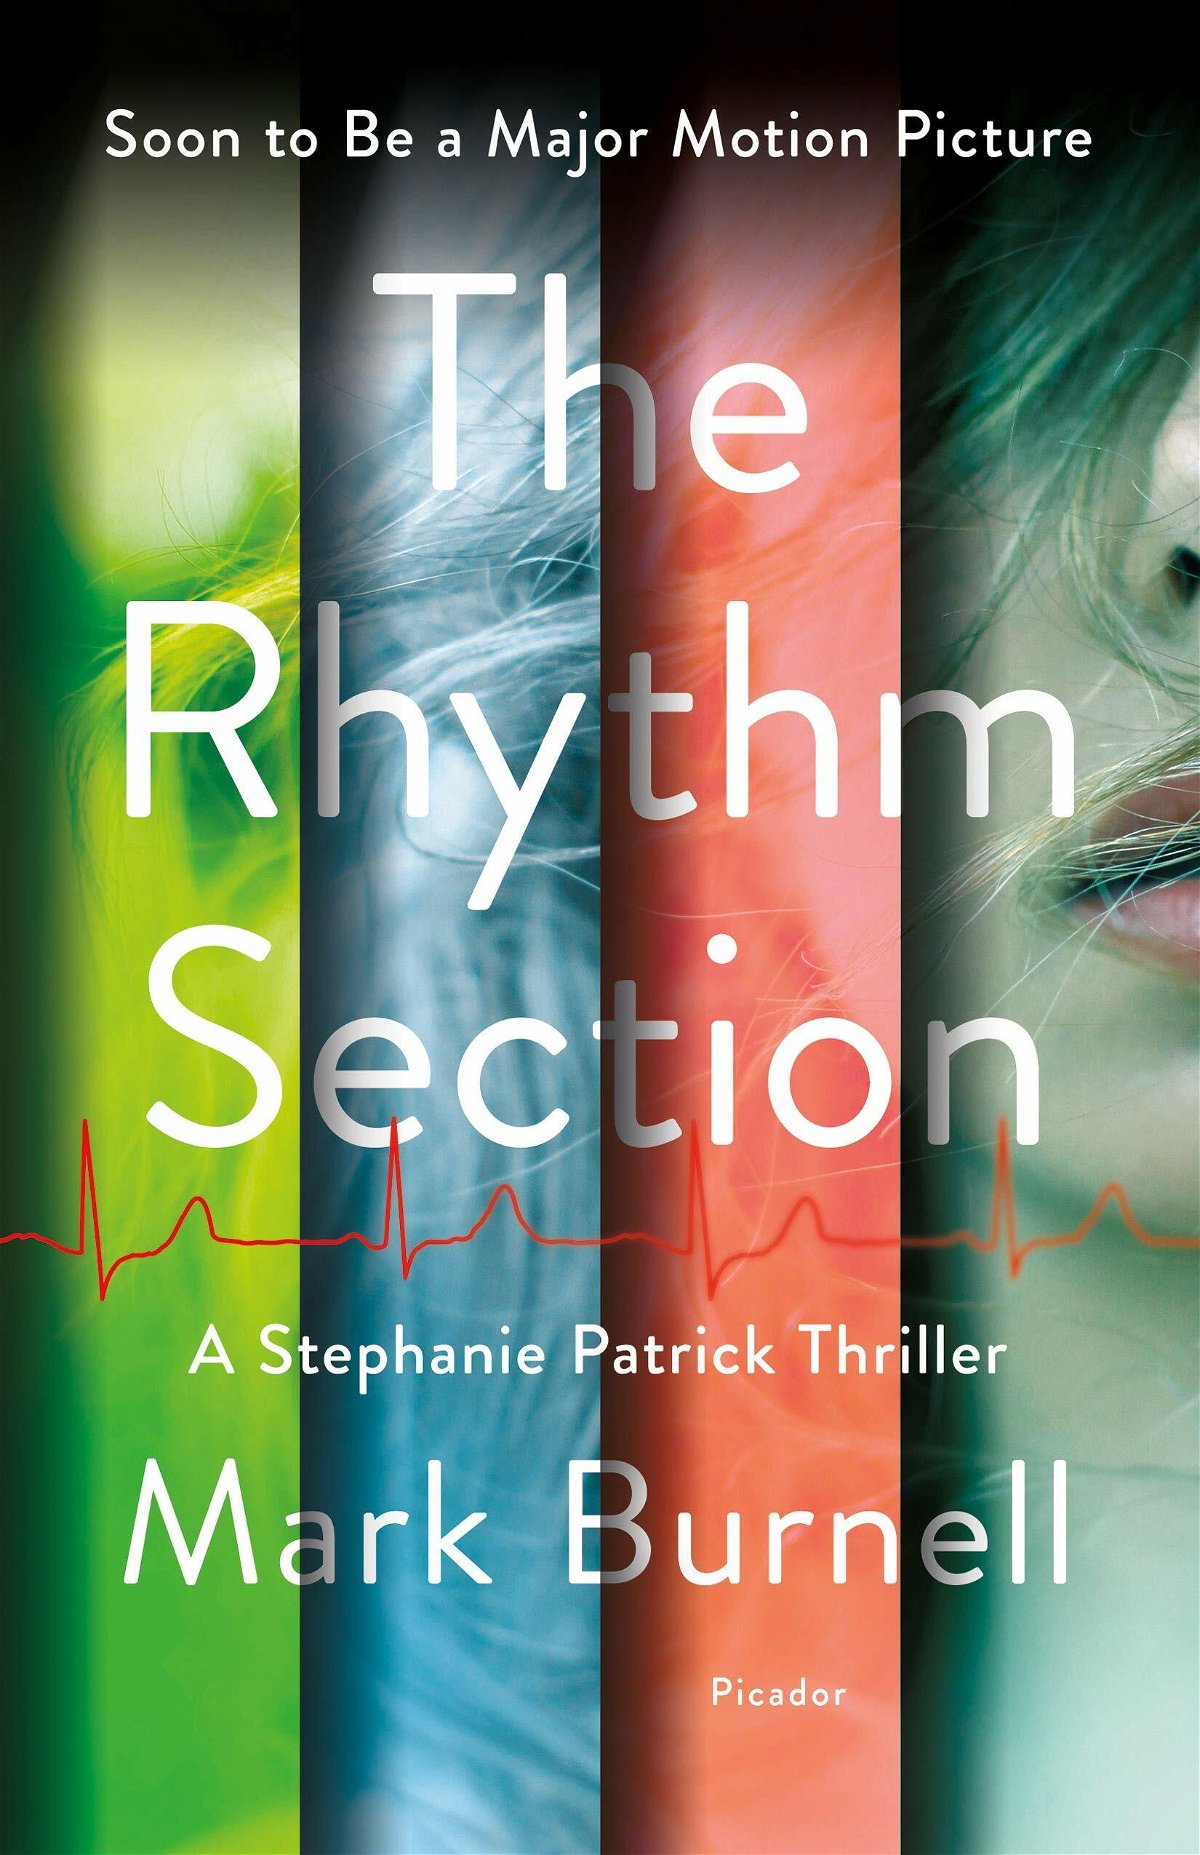 La copertina del libro The Rhythm Section colorata con strisce verticali trasparenti (verde, blu, rossa)